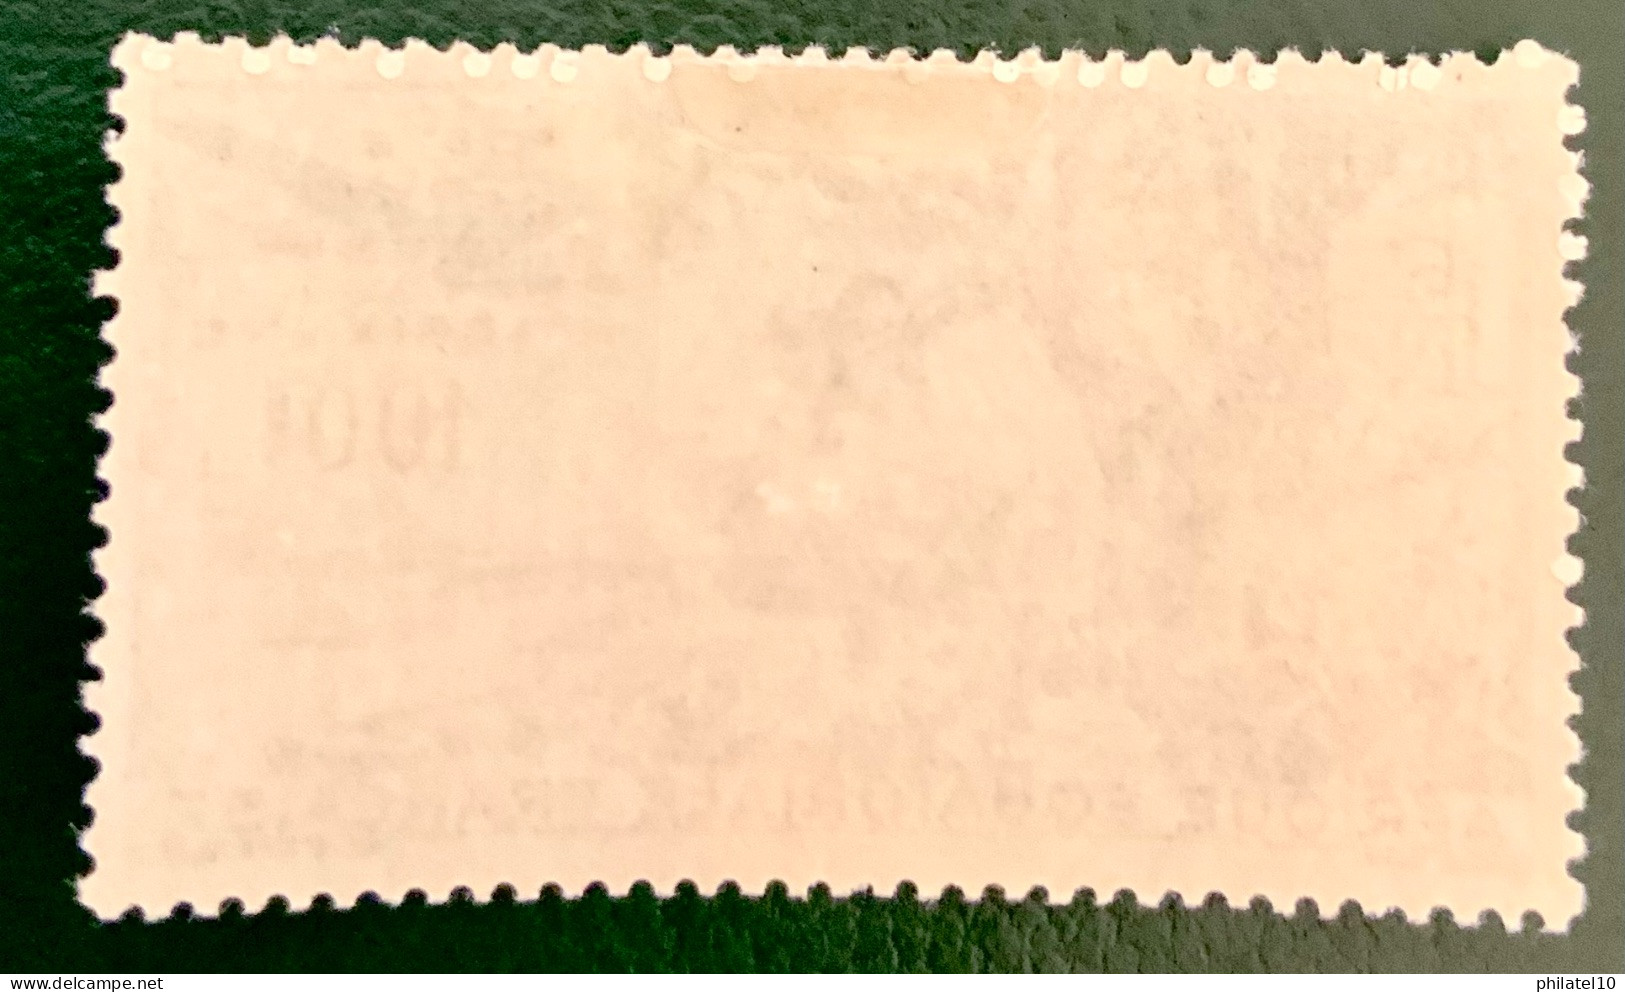 1947 AFRIQUE ÉQUATORIALE FRANÇAISE - POSTE AERIENNE - NEUF* - Unused Stamps